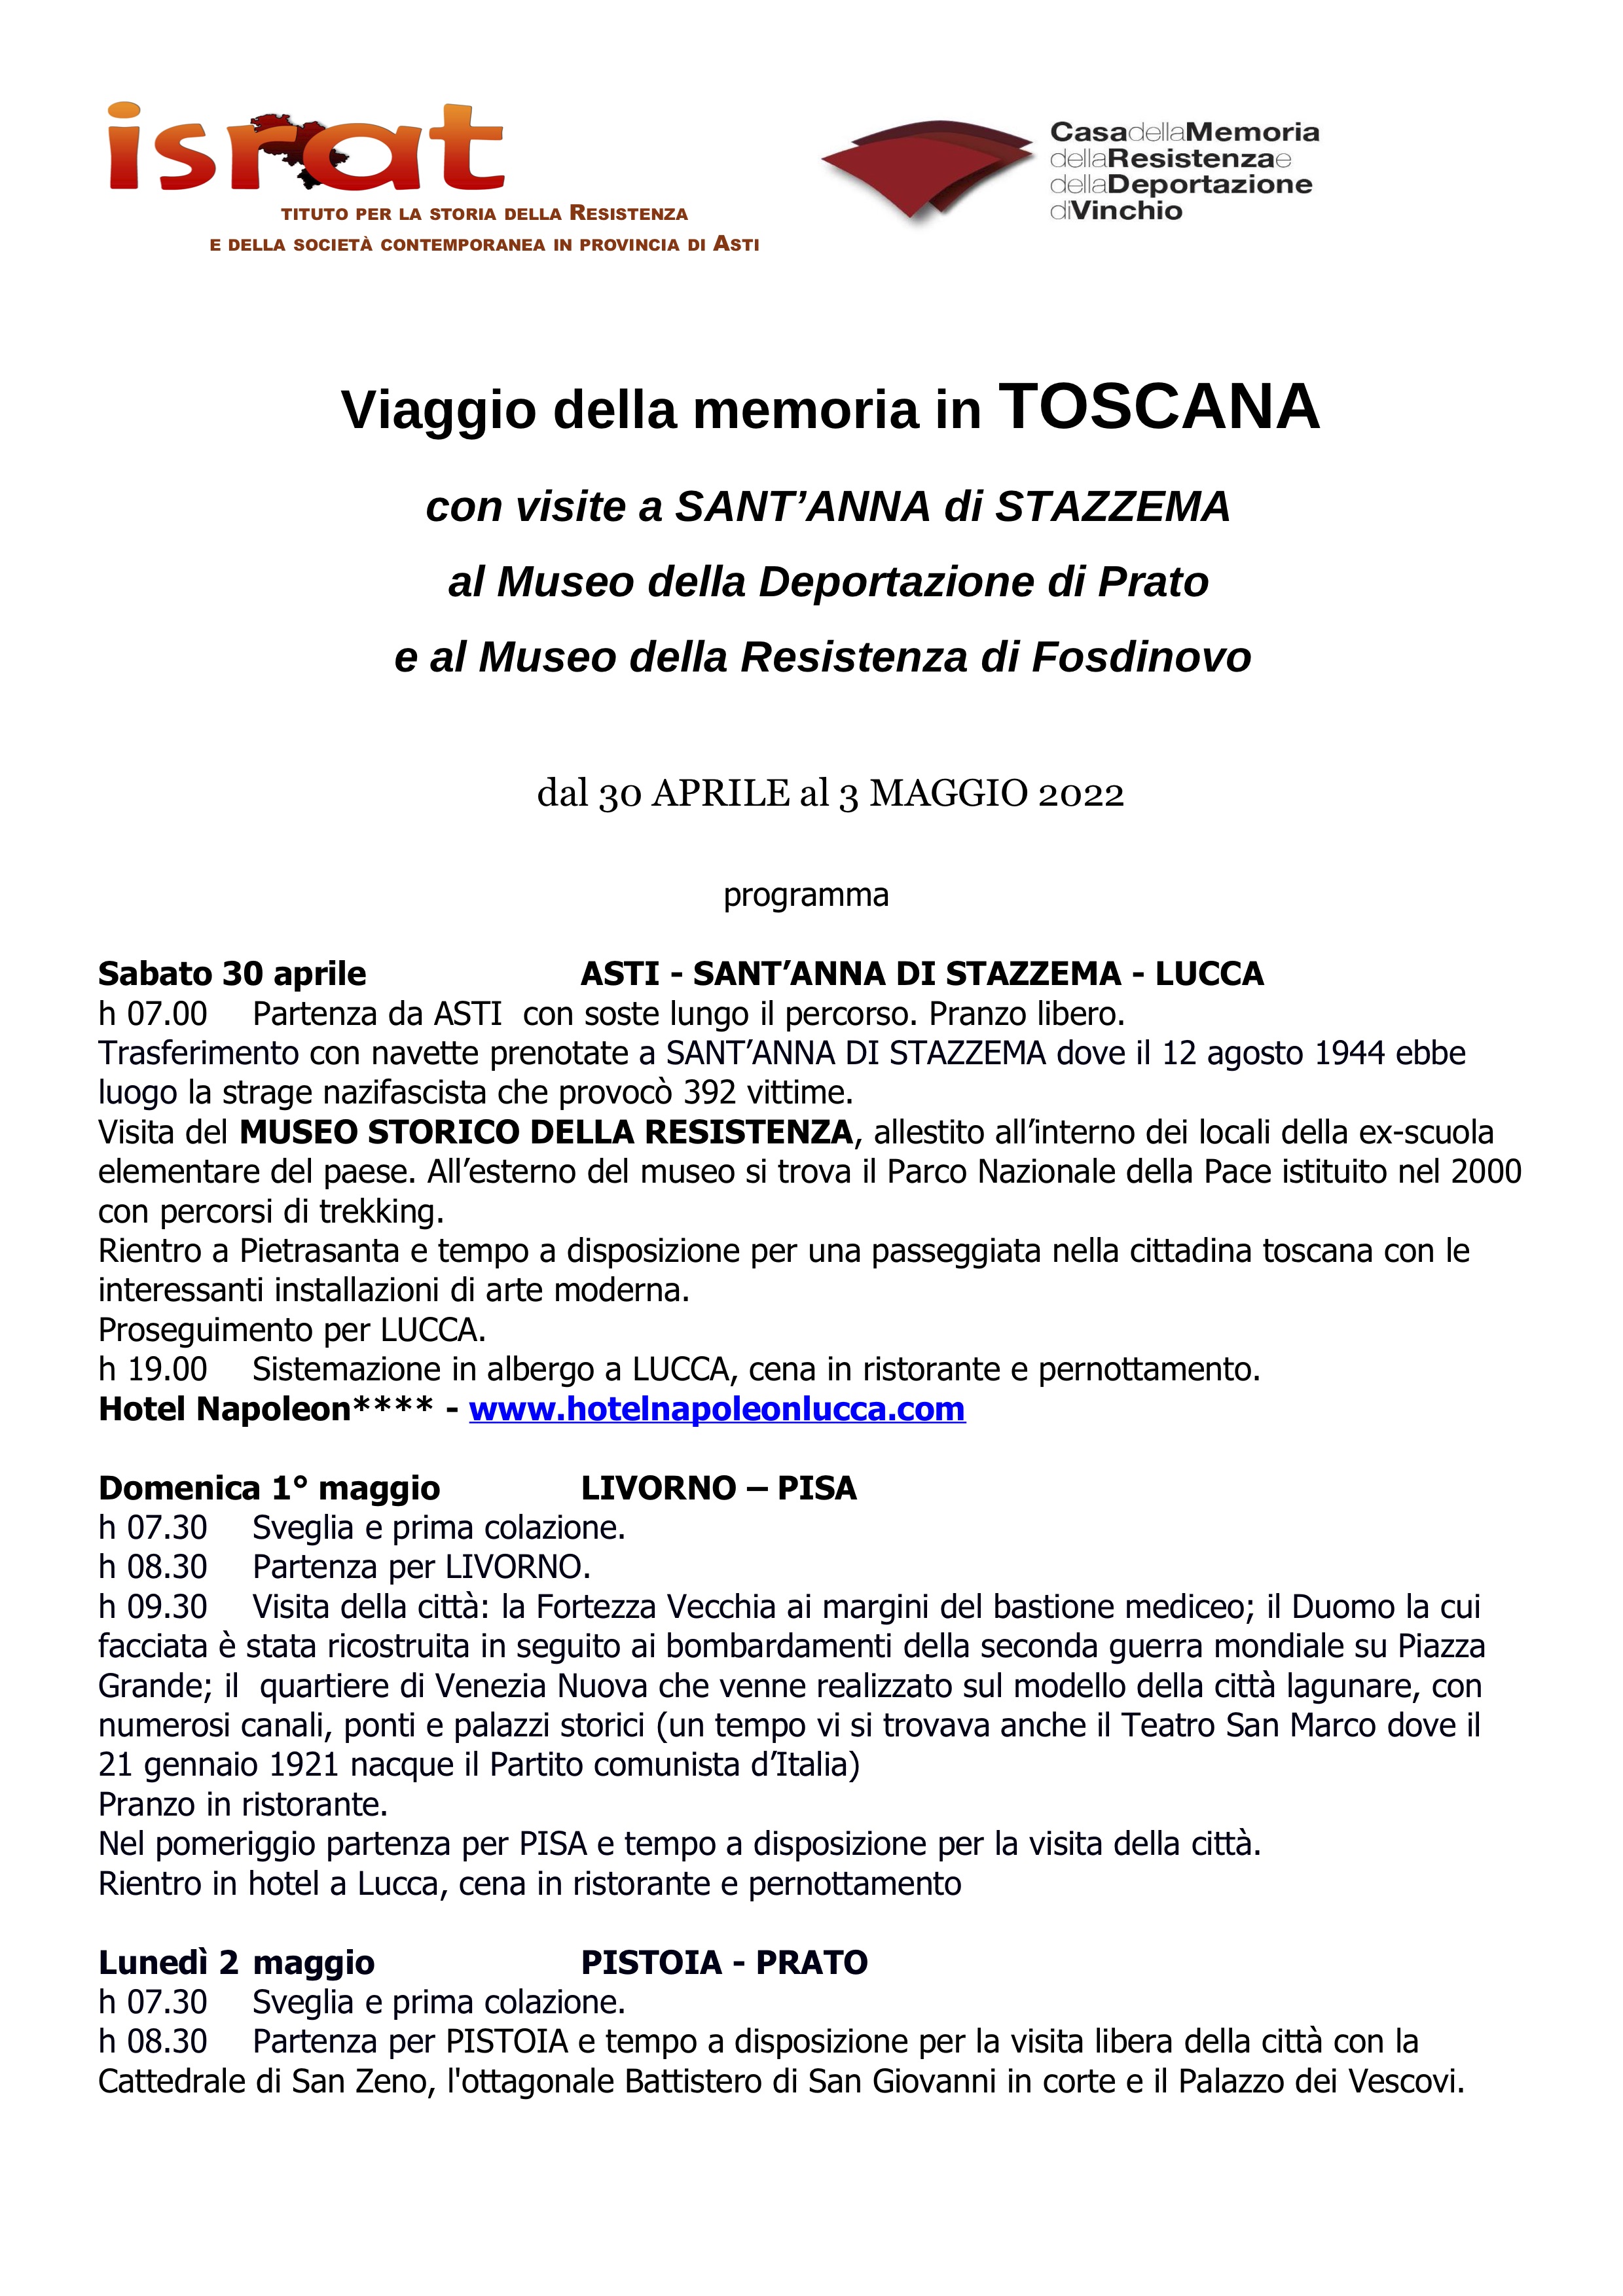 1Programma Toscana 30 aprile 3 maggio 2022